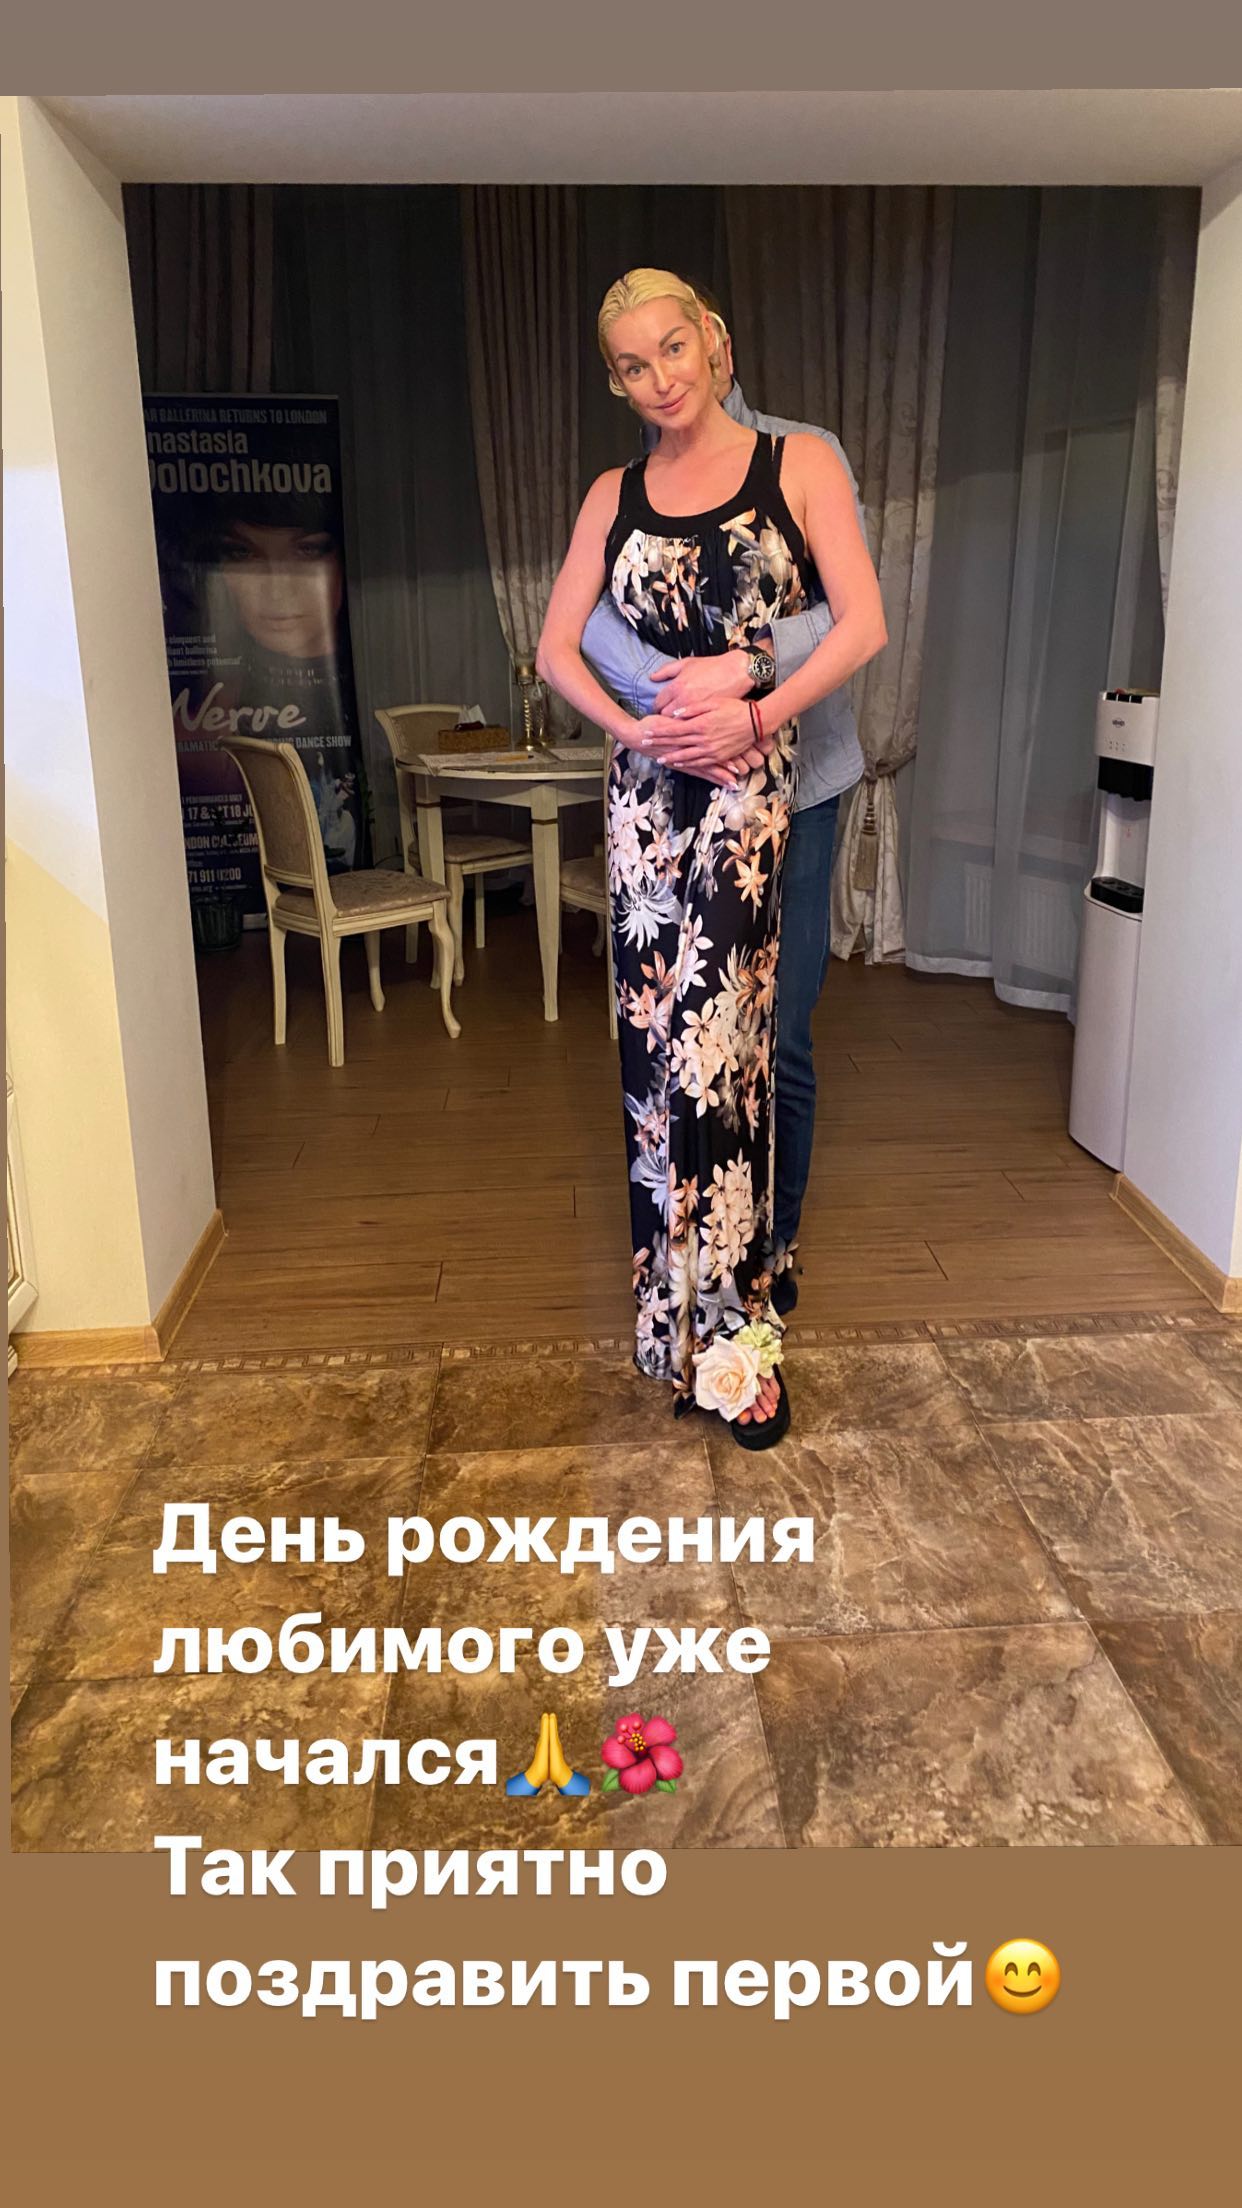 Анастасия Волочкова поздравила с днем рождения очередного "Любимого"